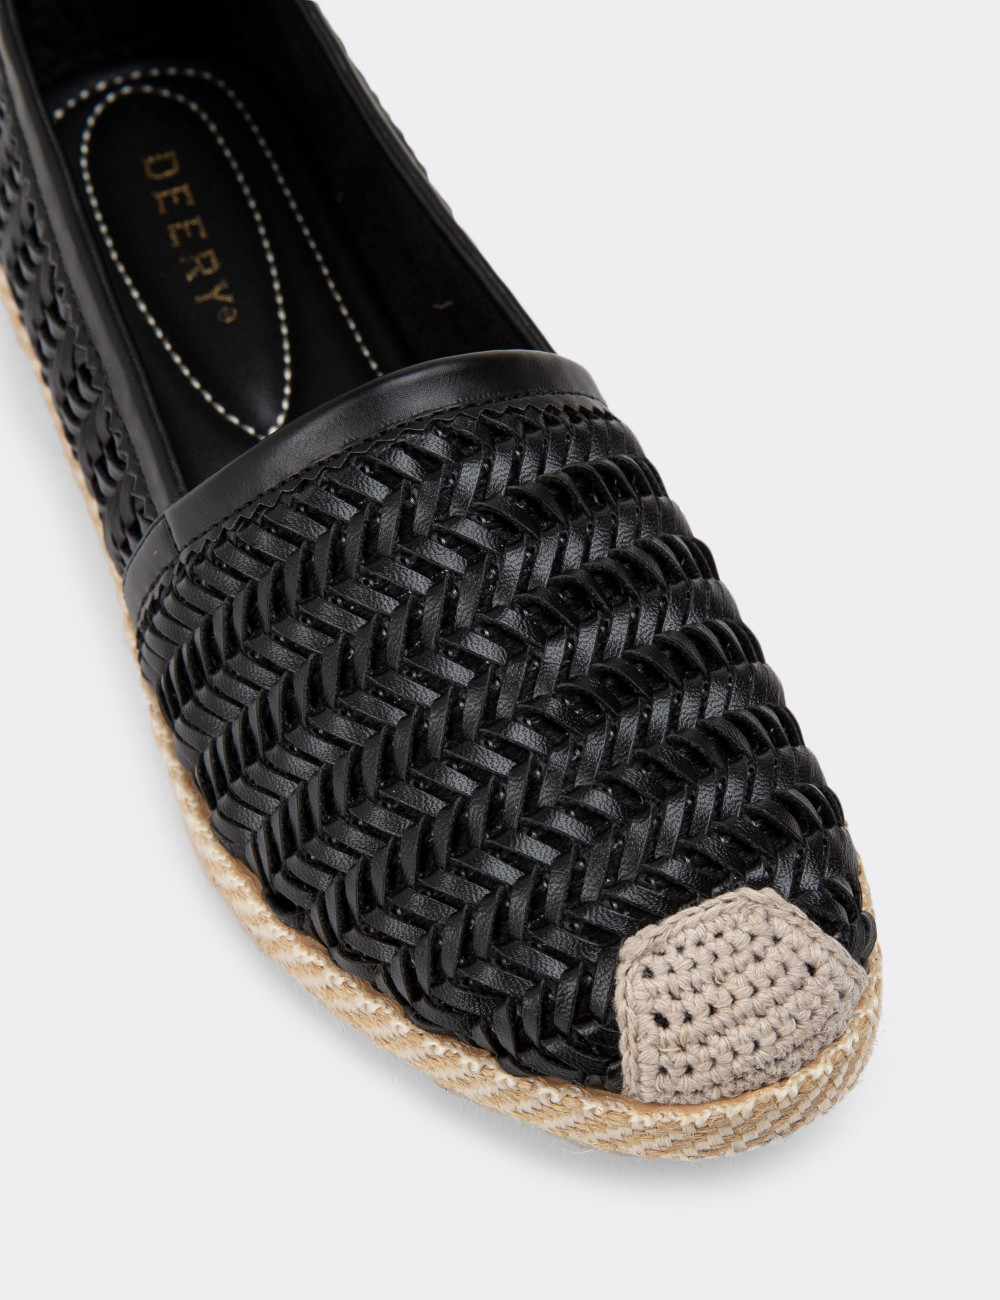 Siyah Hasır Örgü Espadril Kadın Ayakkabı - 38608ZSYHC01